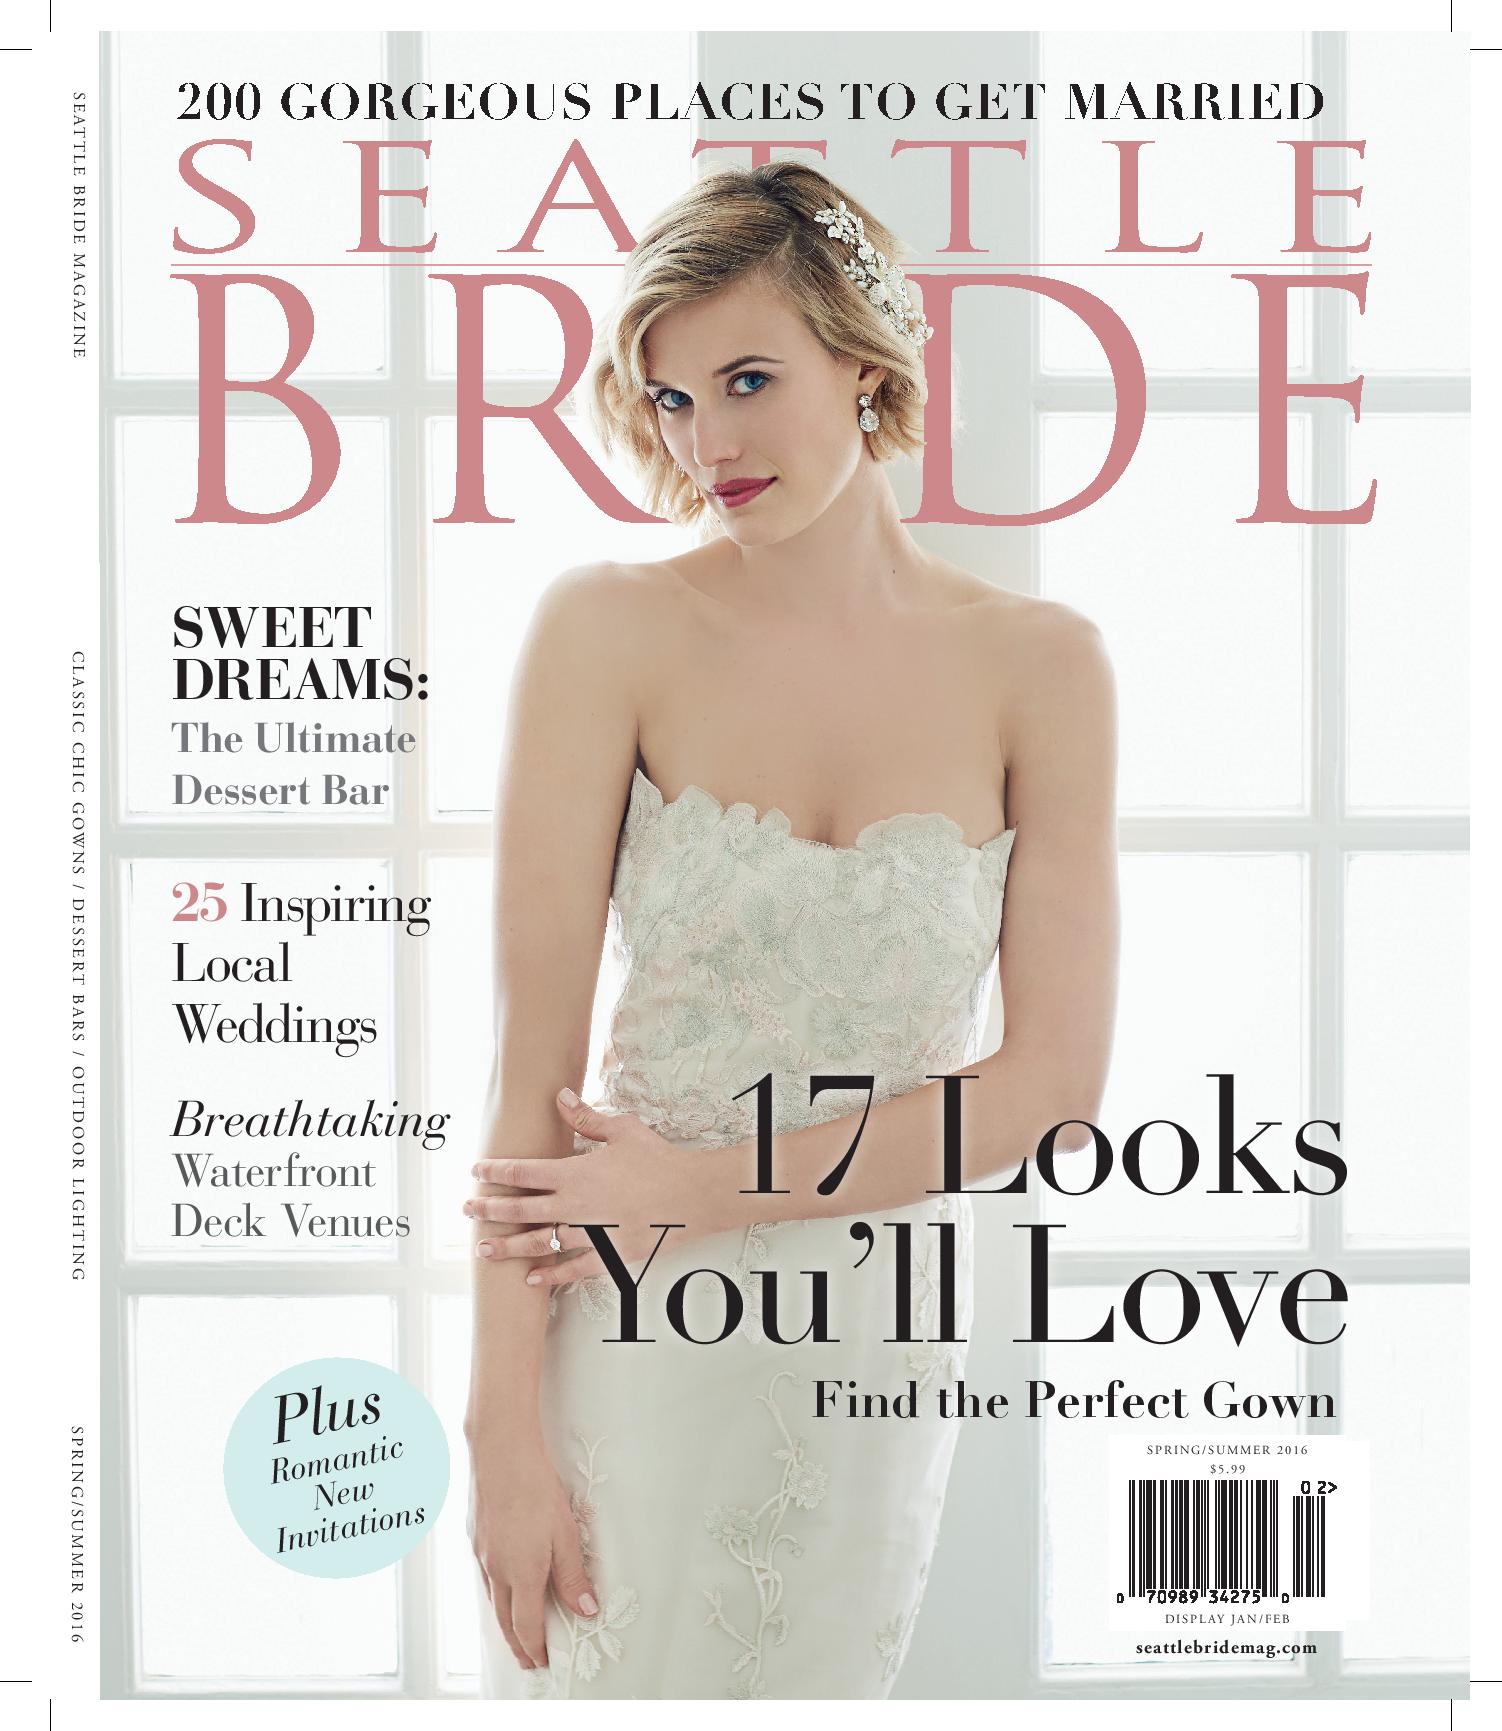 Seattle Bride Featured Wedding Planner.jpg